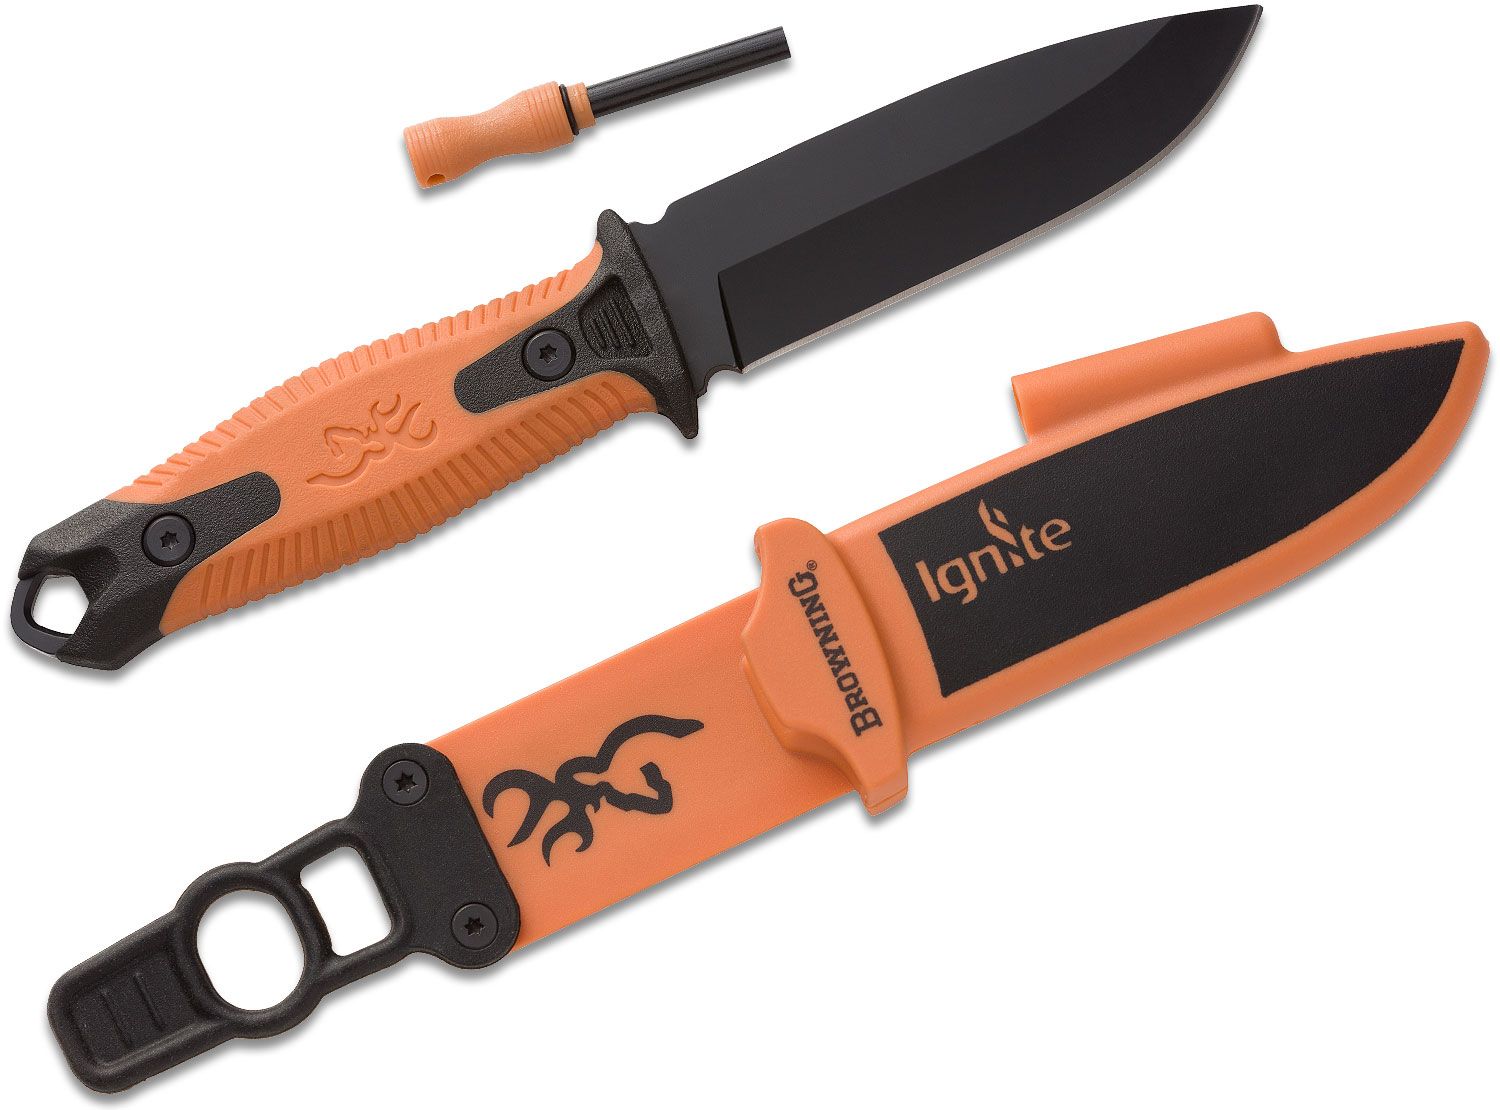 Browning coltello lama fissa Ignite con acciarino e fodero in polimero - Arancio